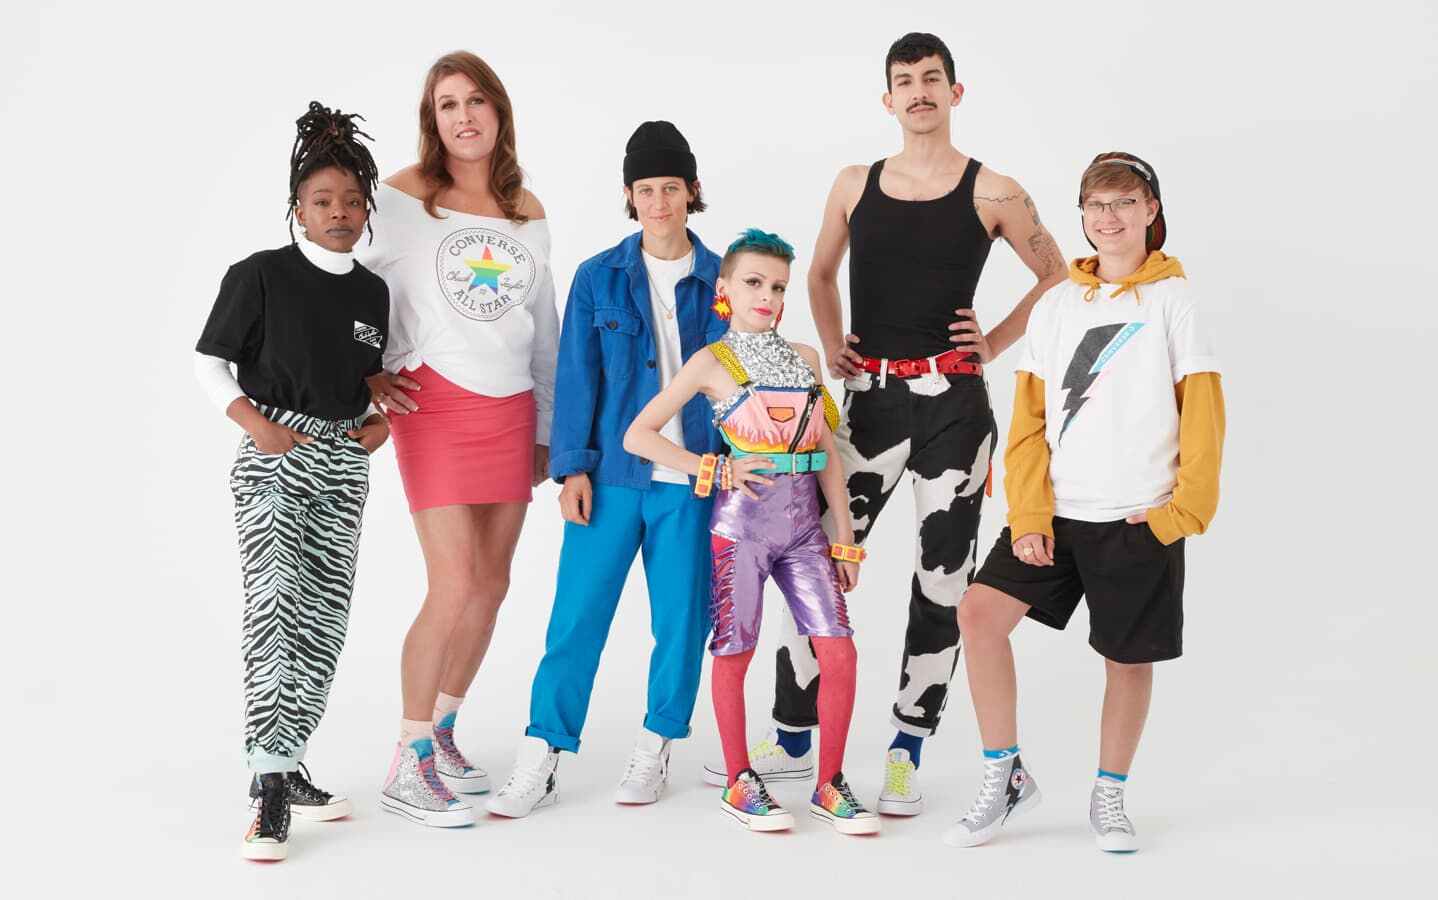 Все равны: как мода поддерживает ЛГБТ-сообщество | Новости Украины - #Буквы